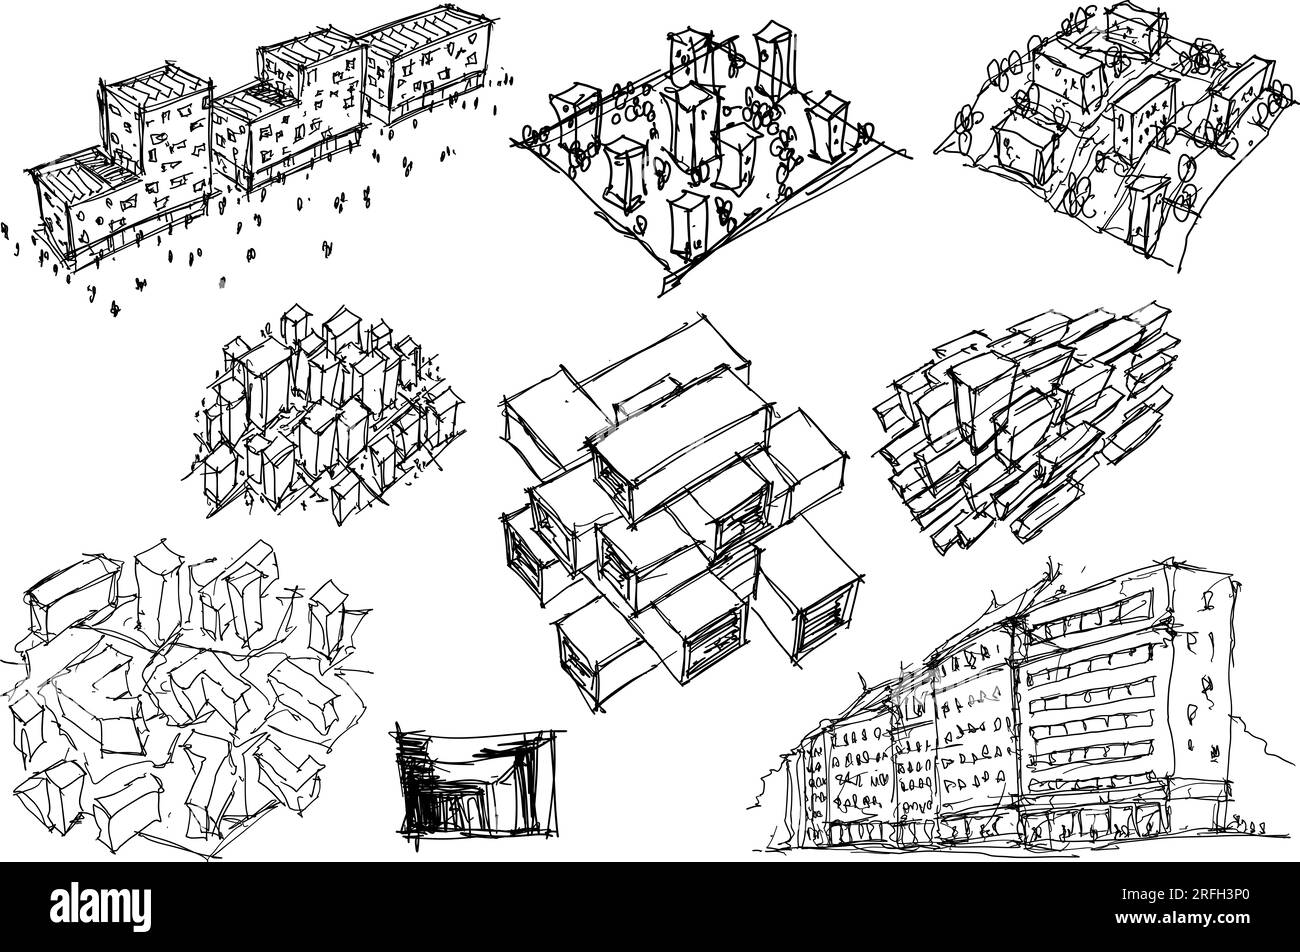 Viele handgezeichnete architektonische Skizzen von Architektur und urbanen Ideen, Gebäuden und Menschen Stockfoto